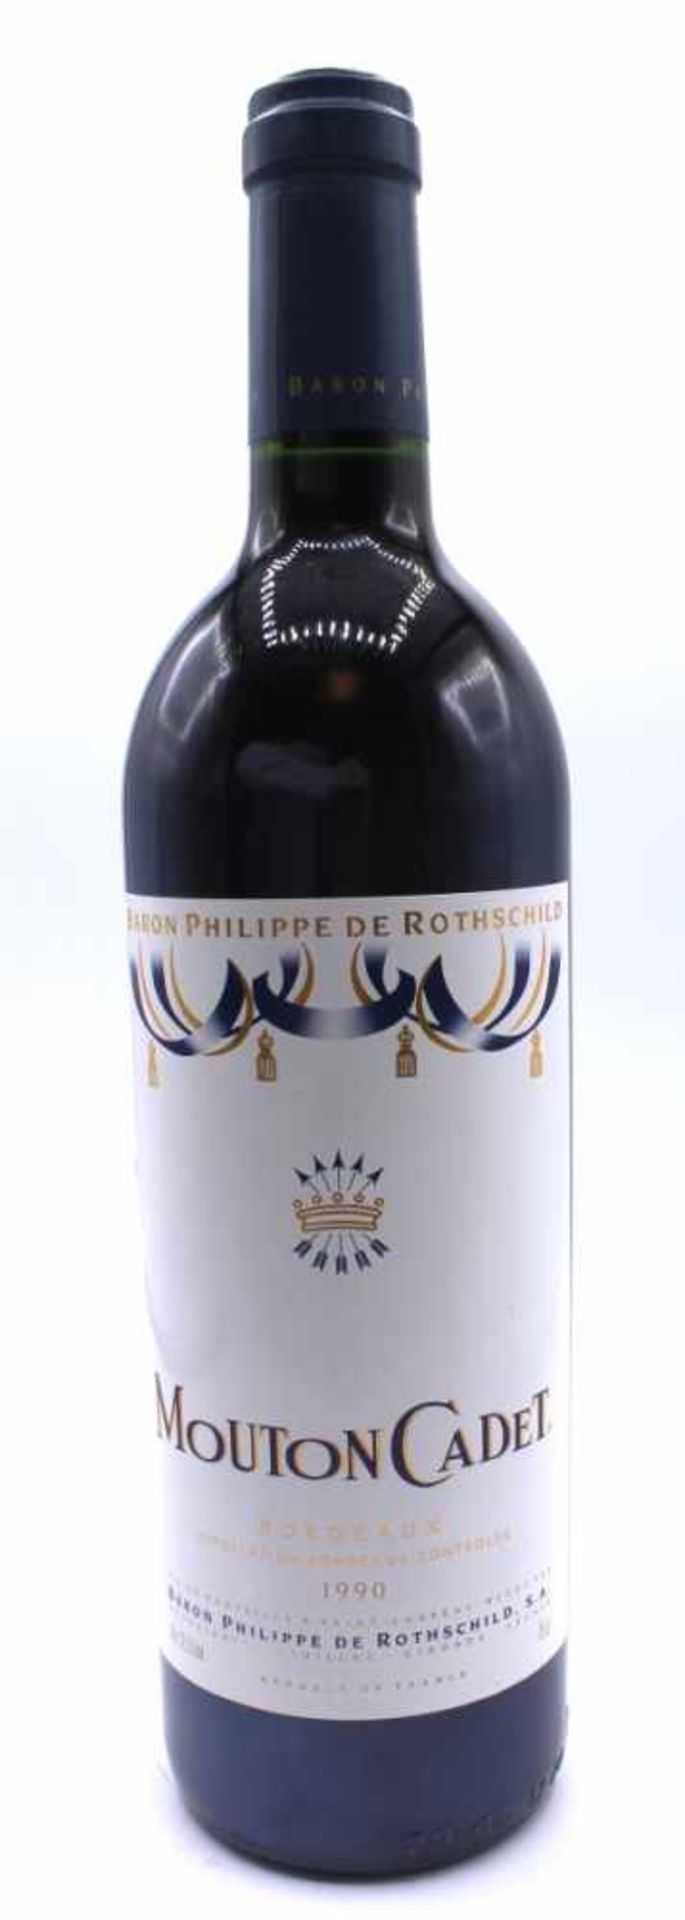 6 Flaschen Wein - Mouton Cadet Bordeaux Appellation Bordeaux Controlee 1990, Baron Philippe de